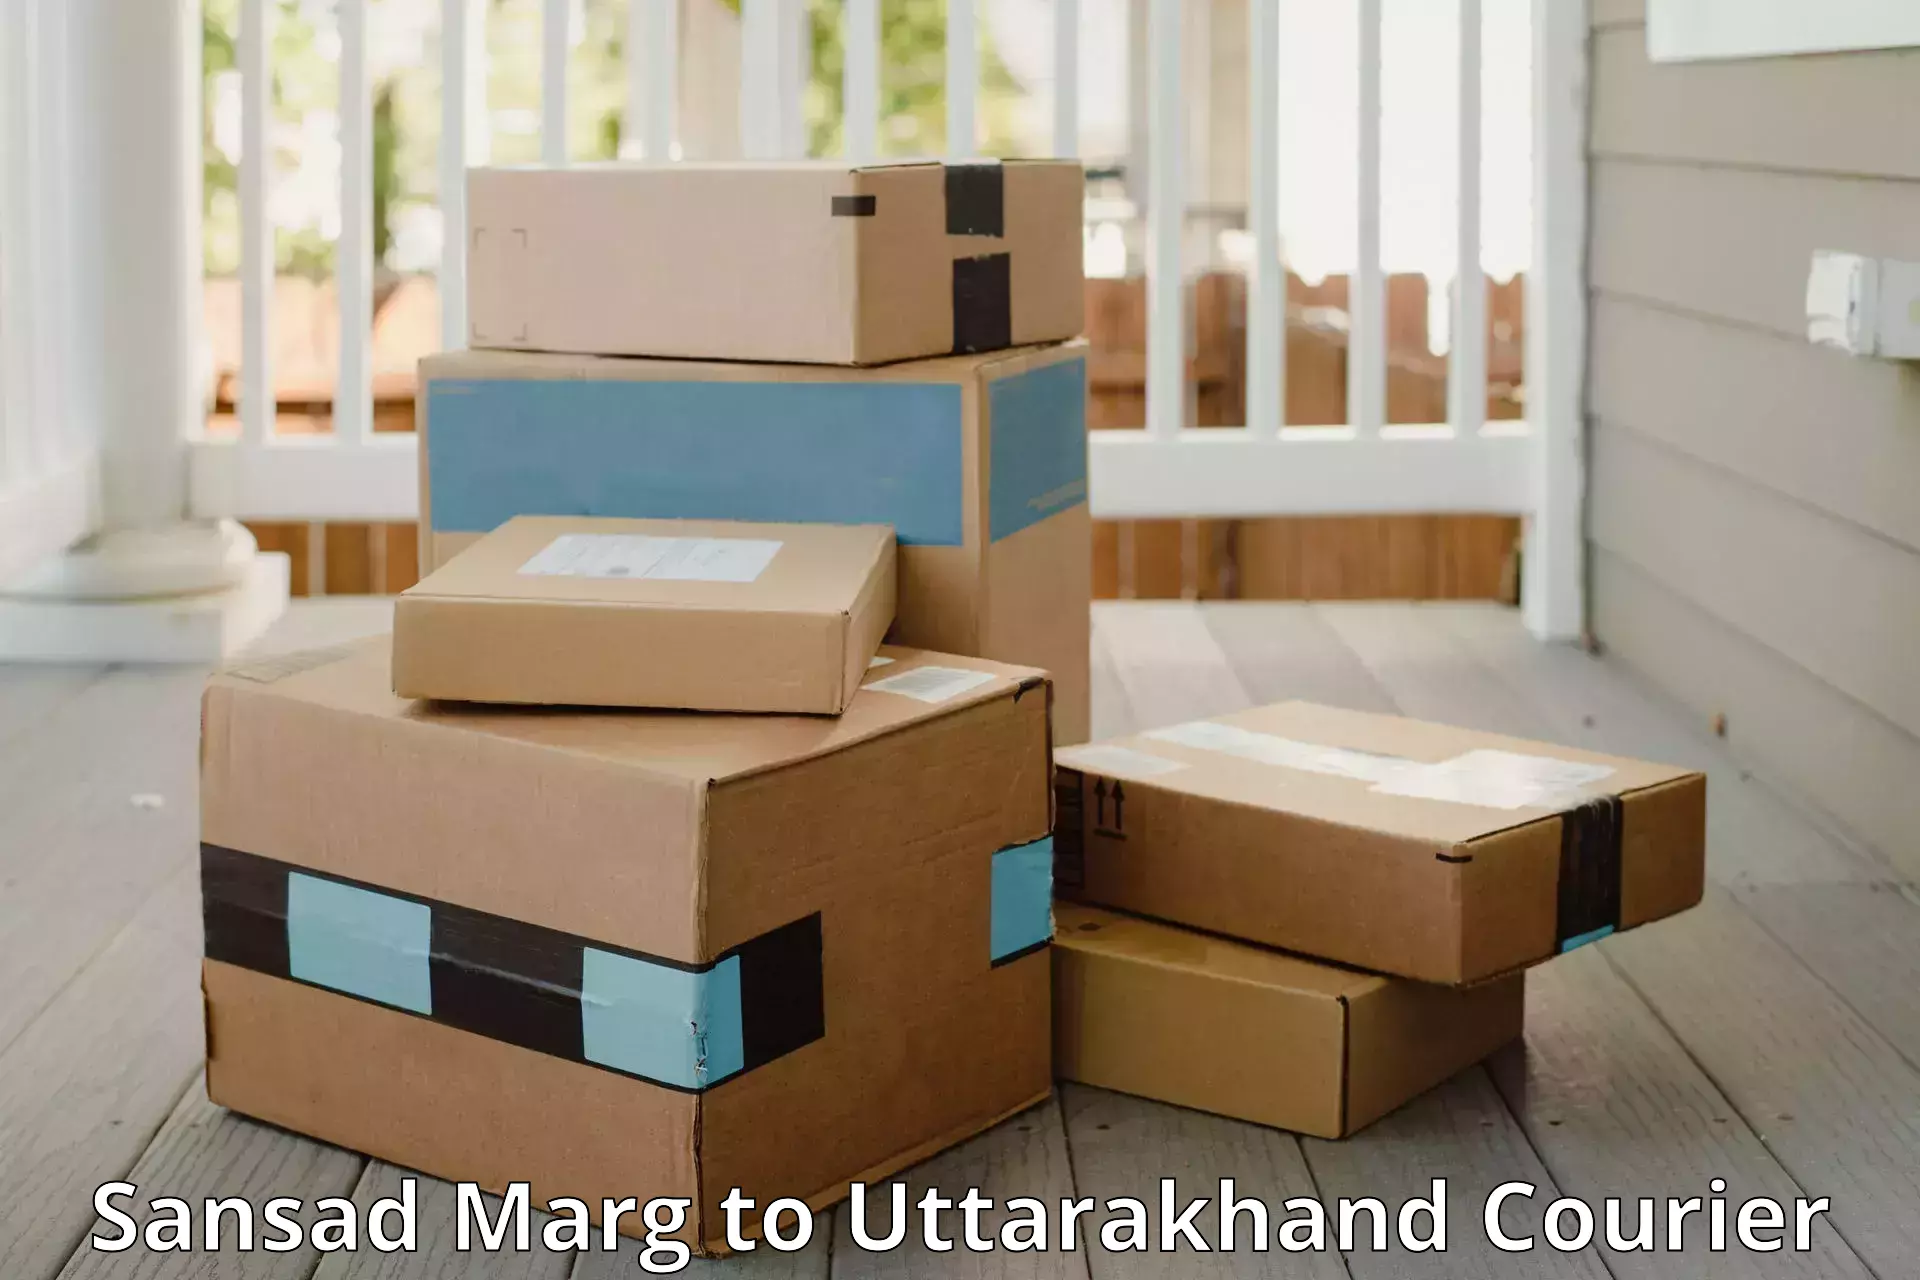 Luggage delivery network Sansad Marg to Uttarkashi